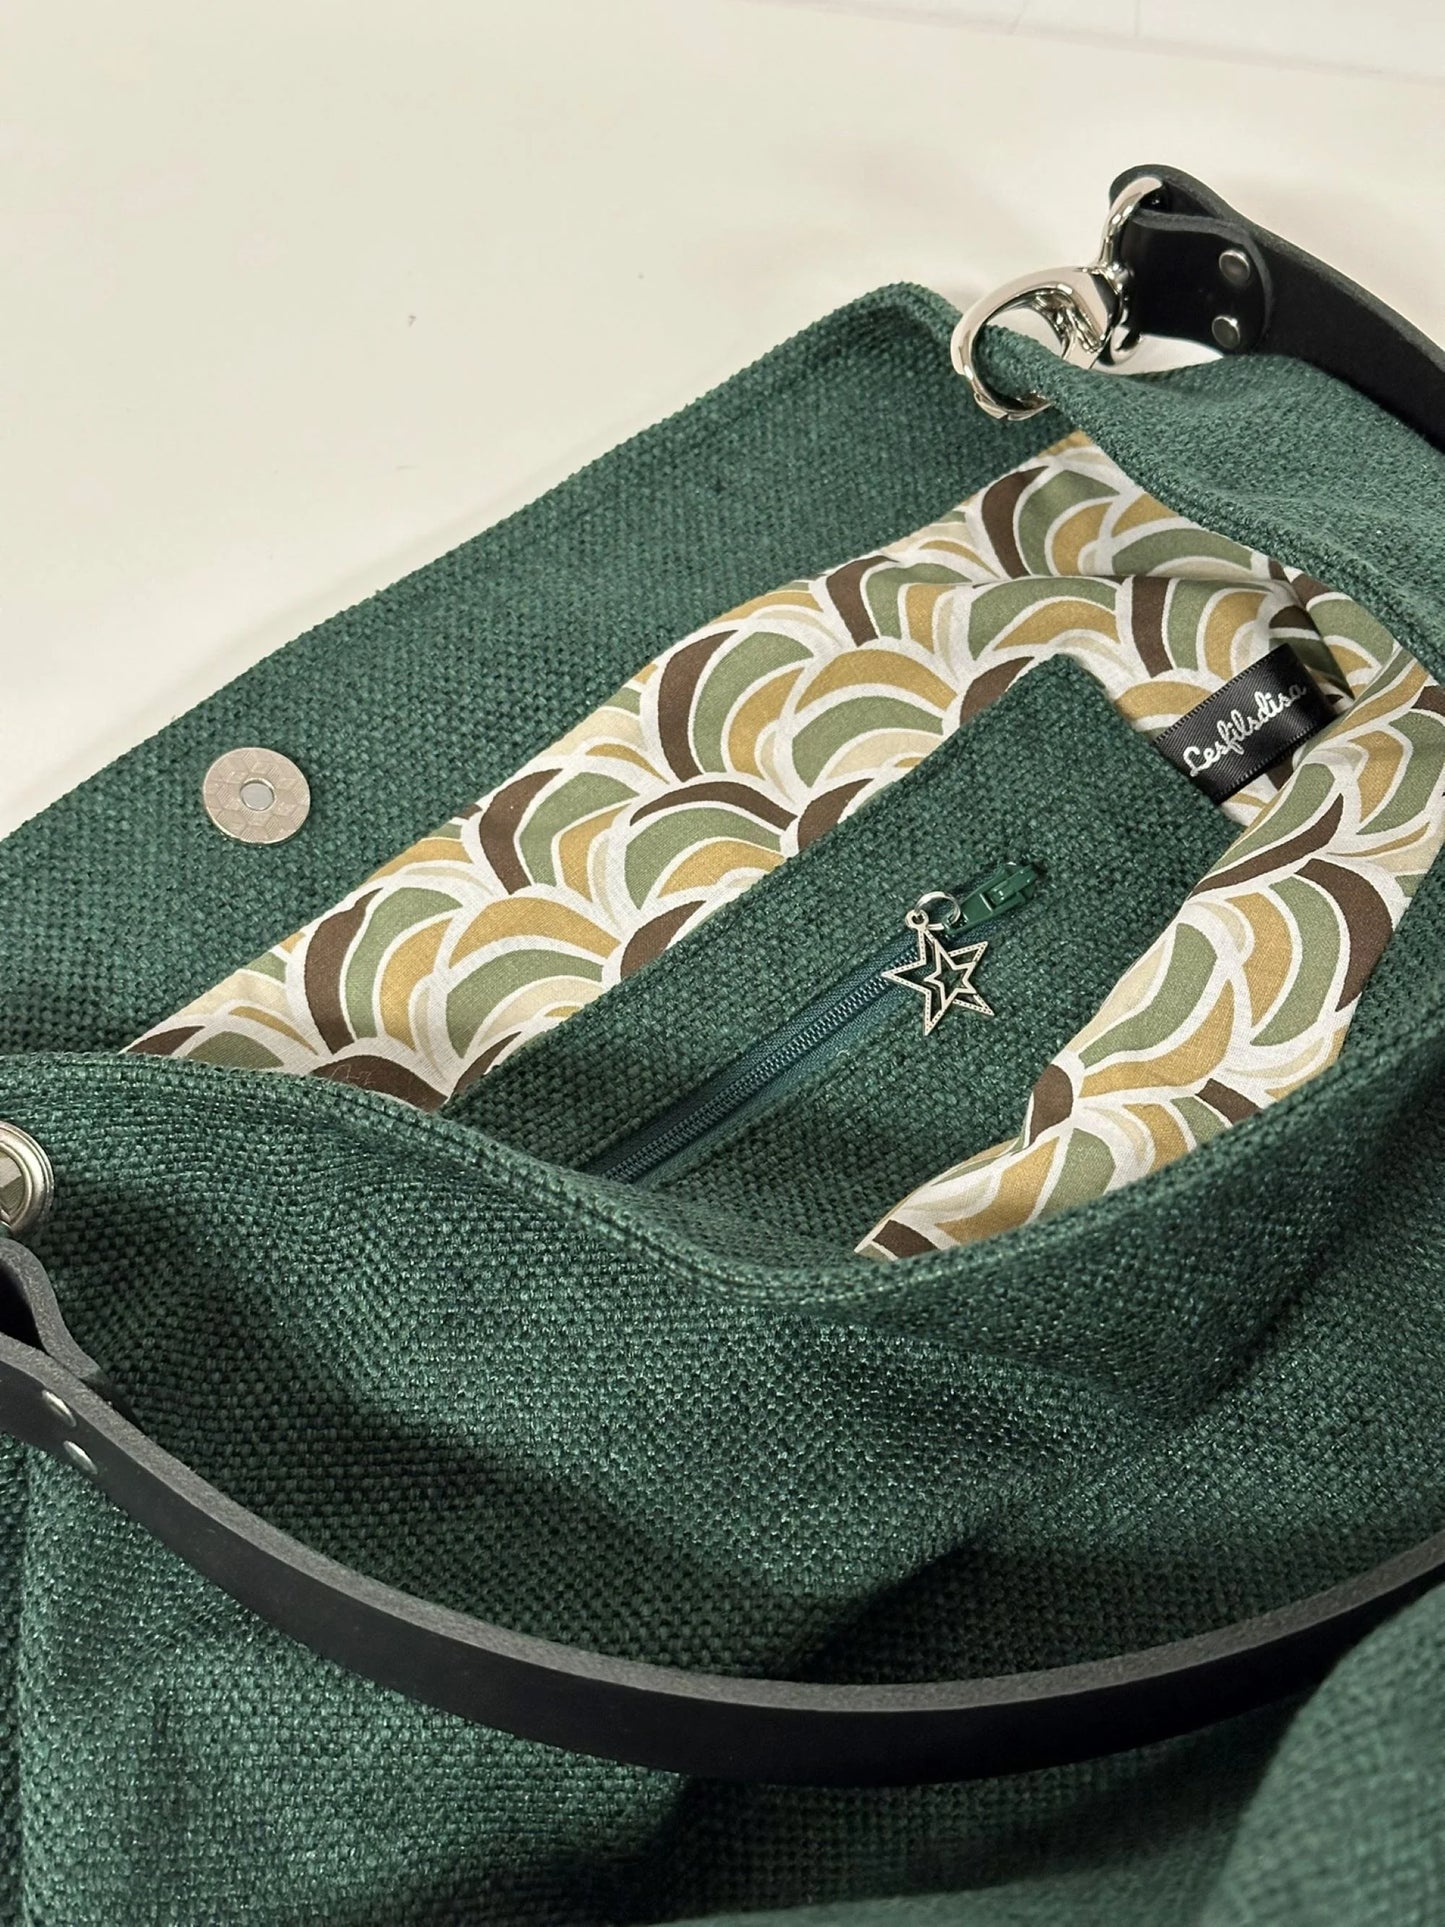 La poche zippée intérieure du sac hobo en toile vert forêt et son anse en cuir .